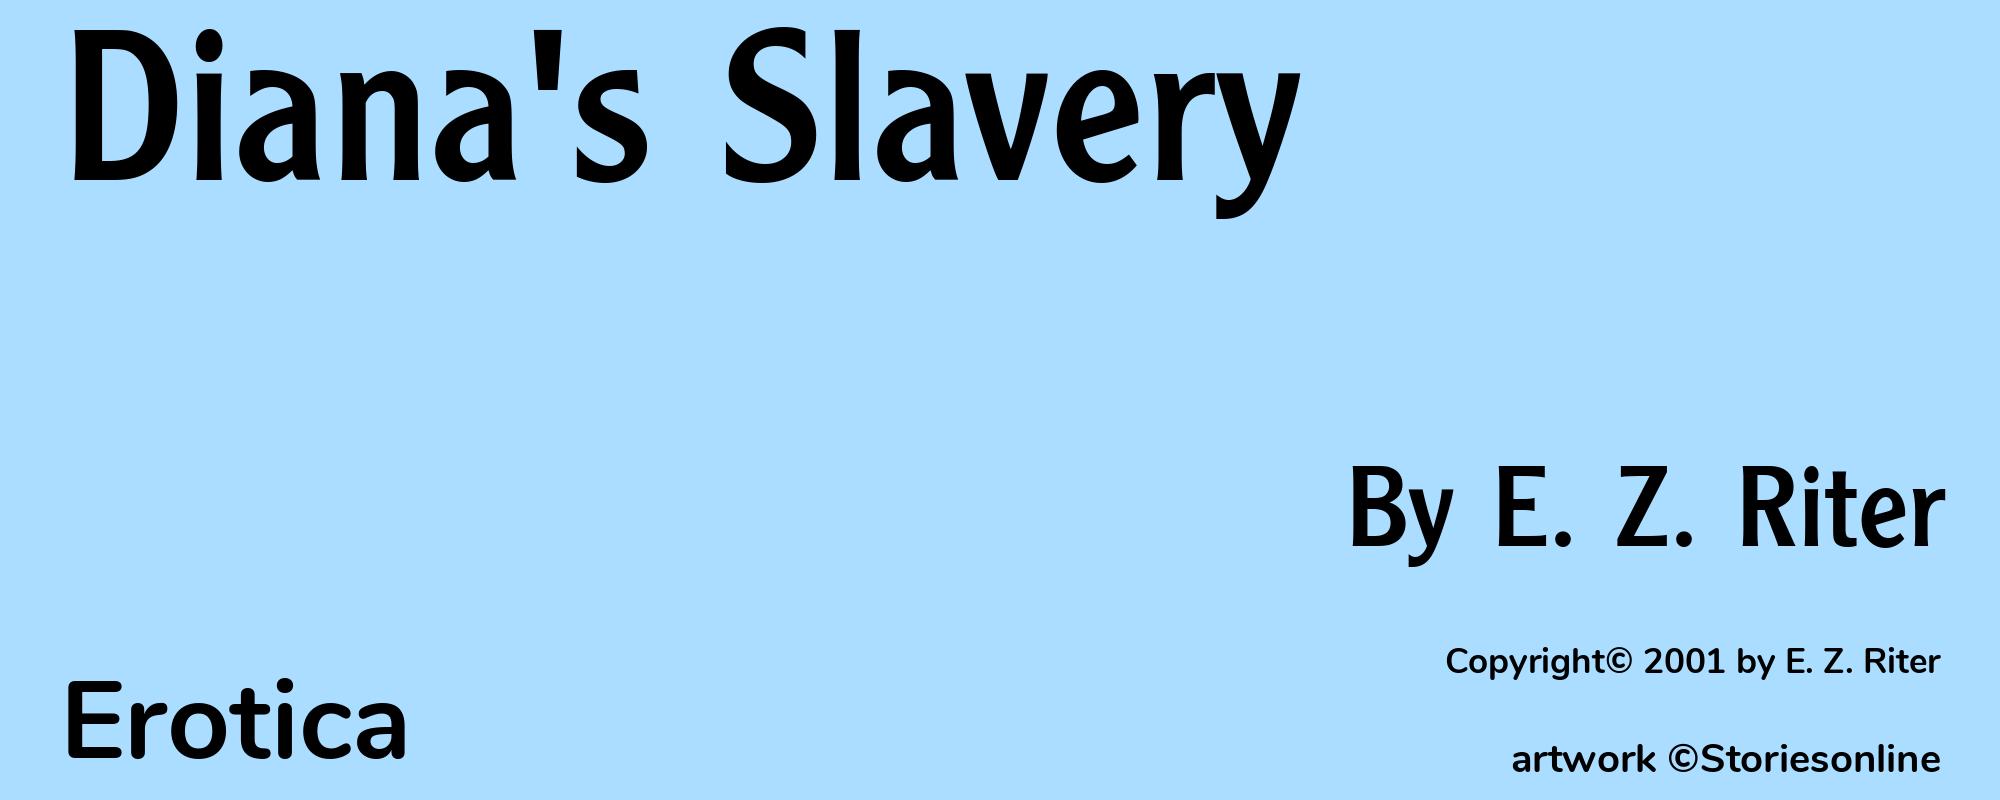 Diana's Slavery - Cover